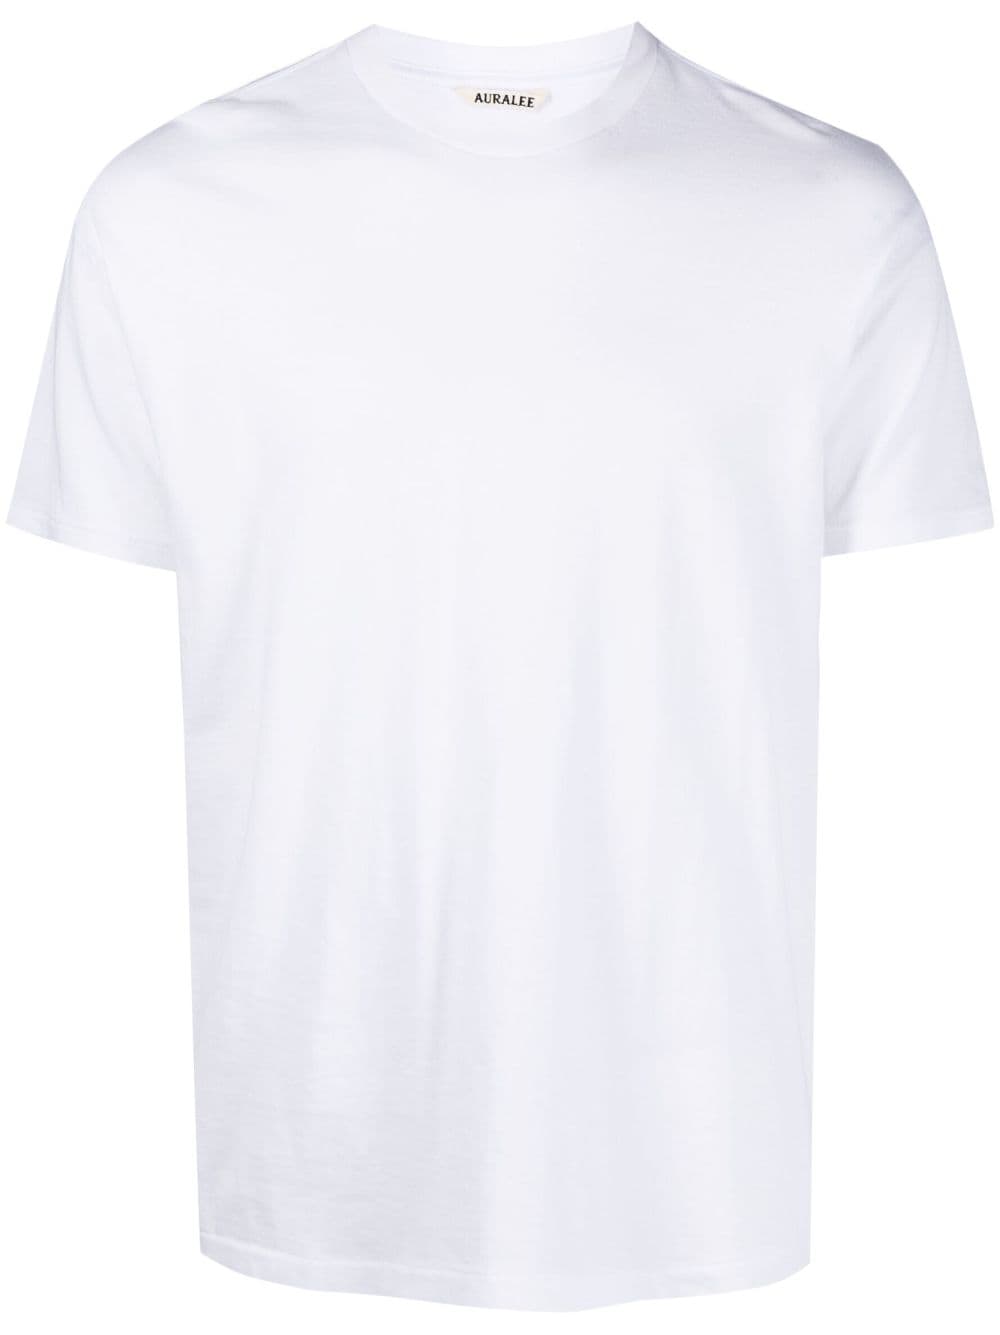 Auralee crew-neck cotton T-shirt - White von Auralee